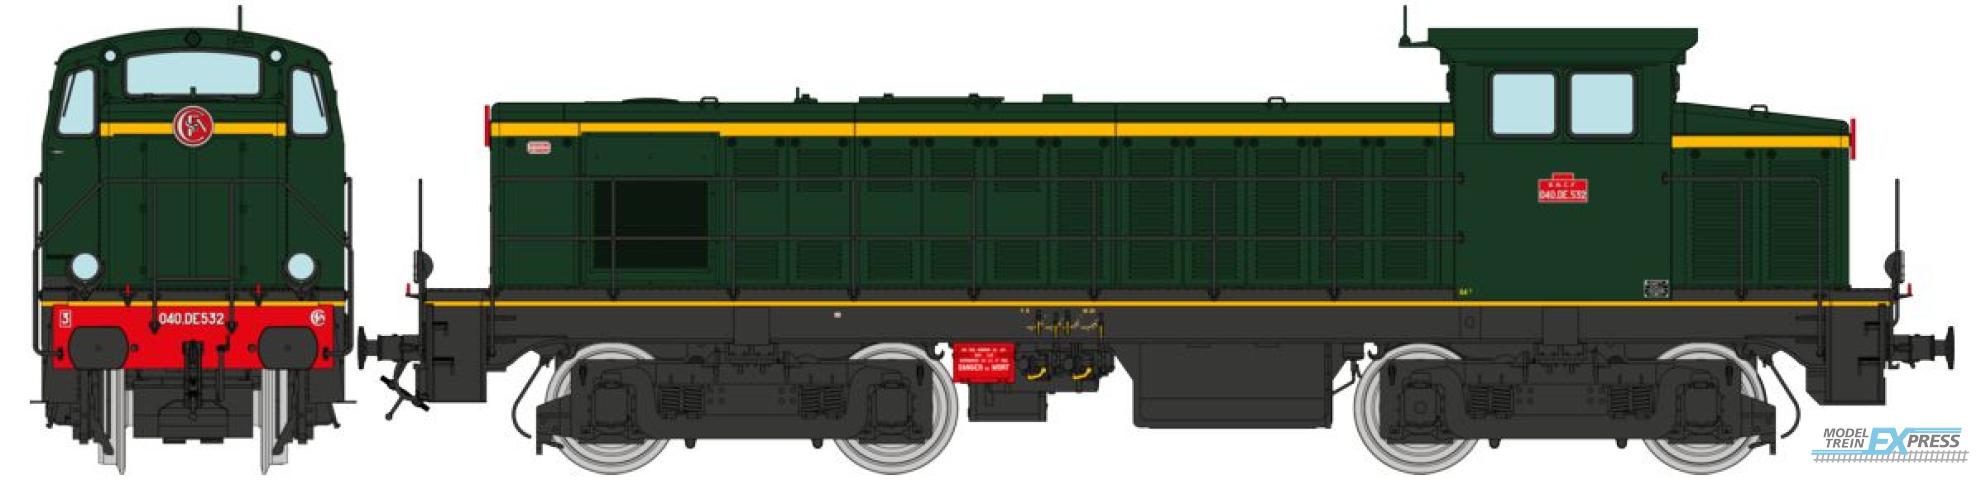 REE models JM-007S Diesel Locomotive 040 DE 532 Origin, West, Era  III - DCC SOUND